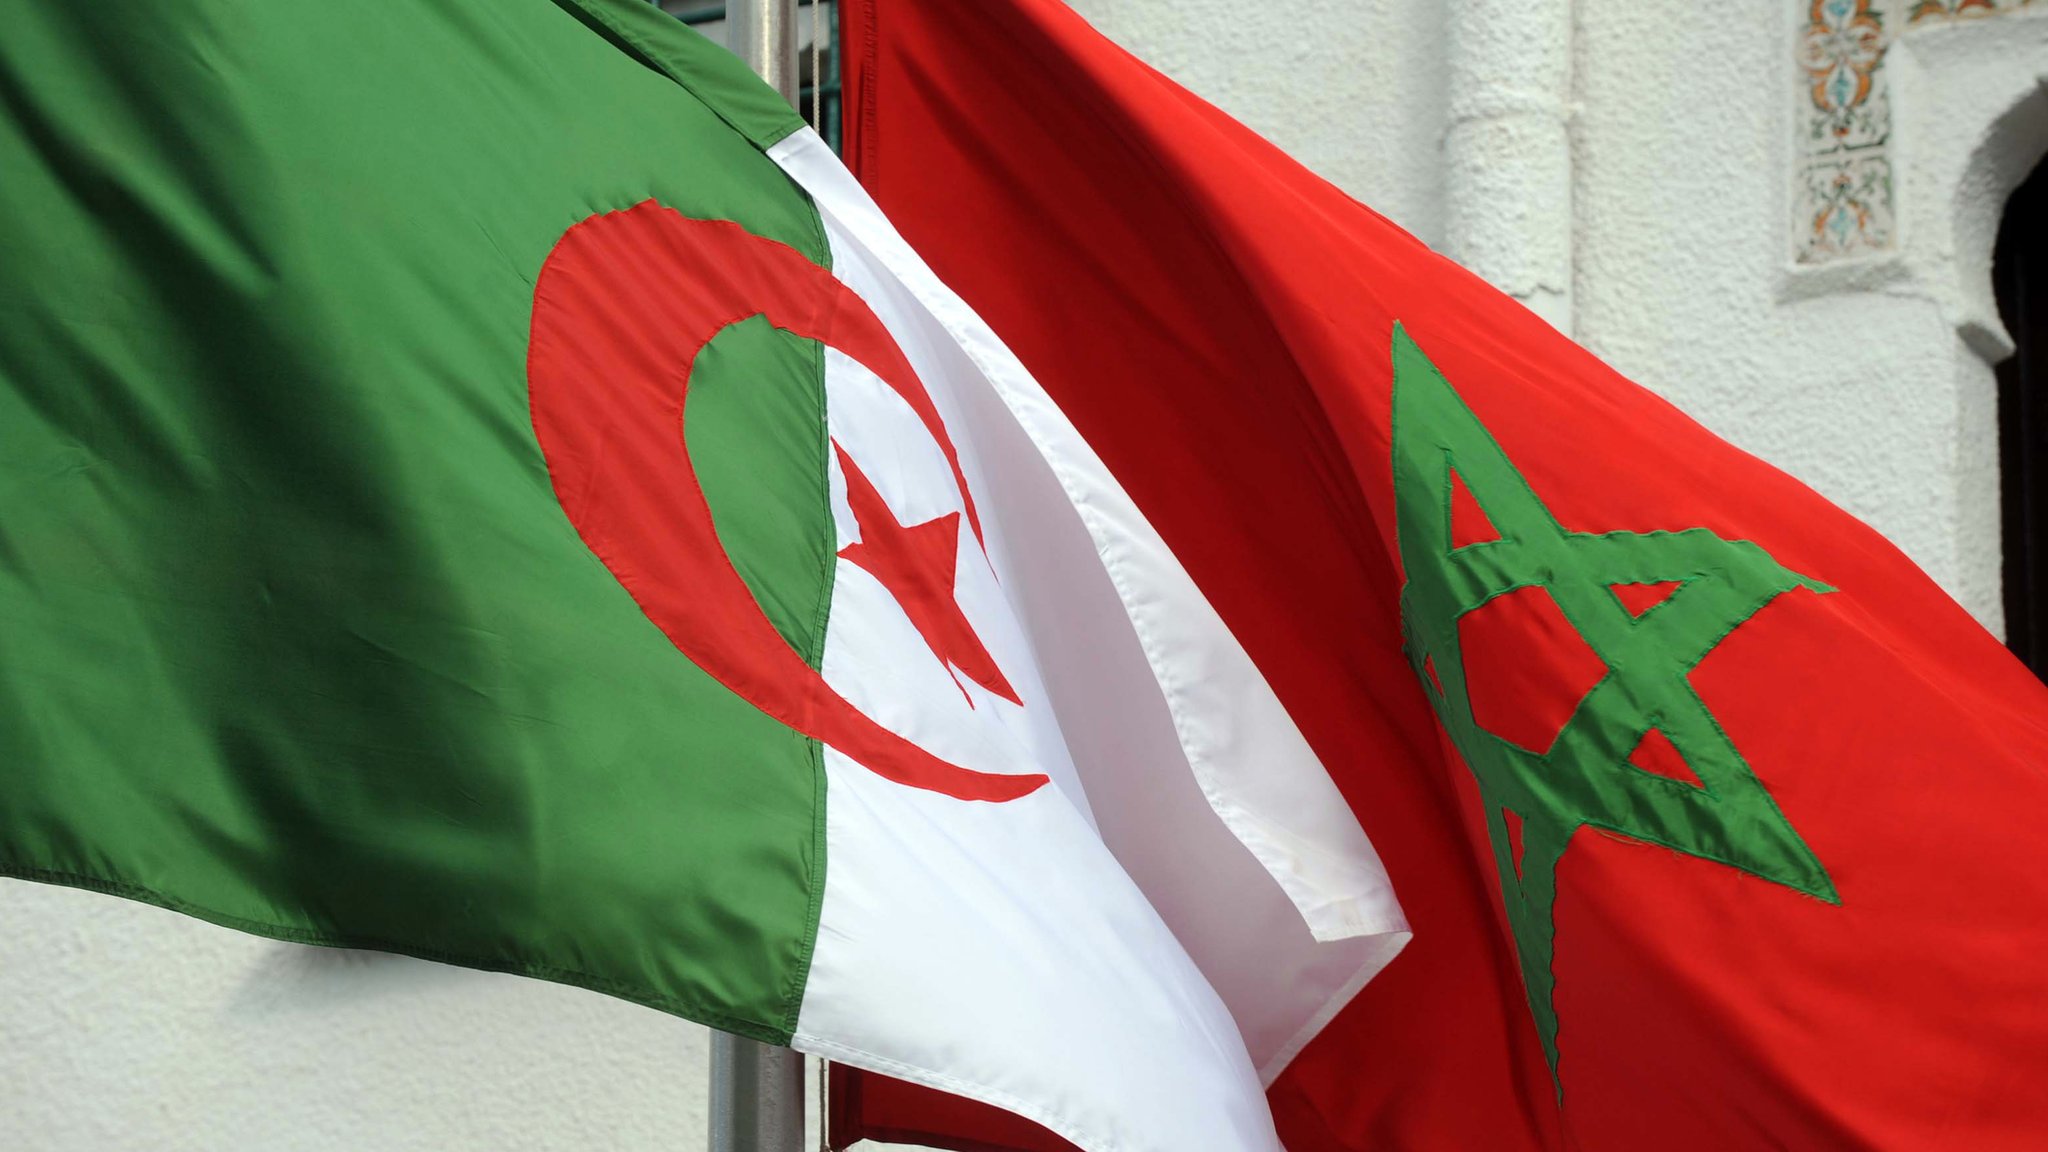 ضد المغرب الجزائر هل أصبحت